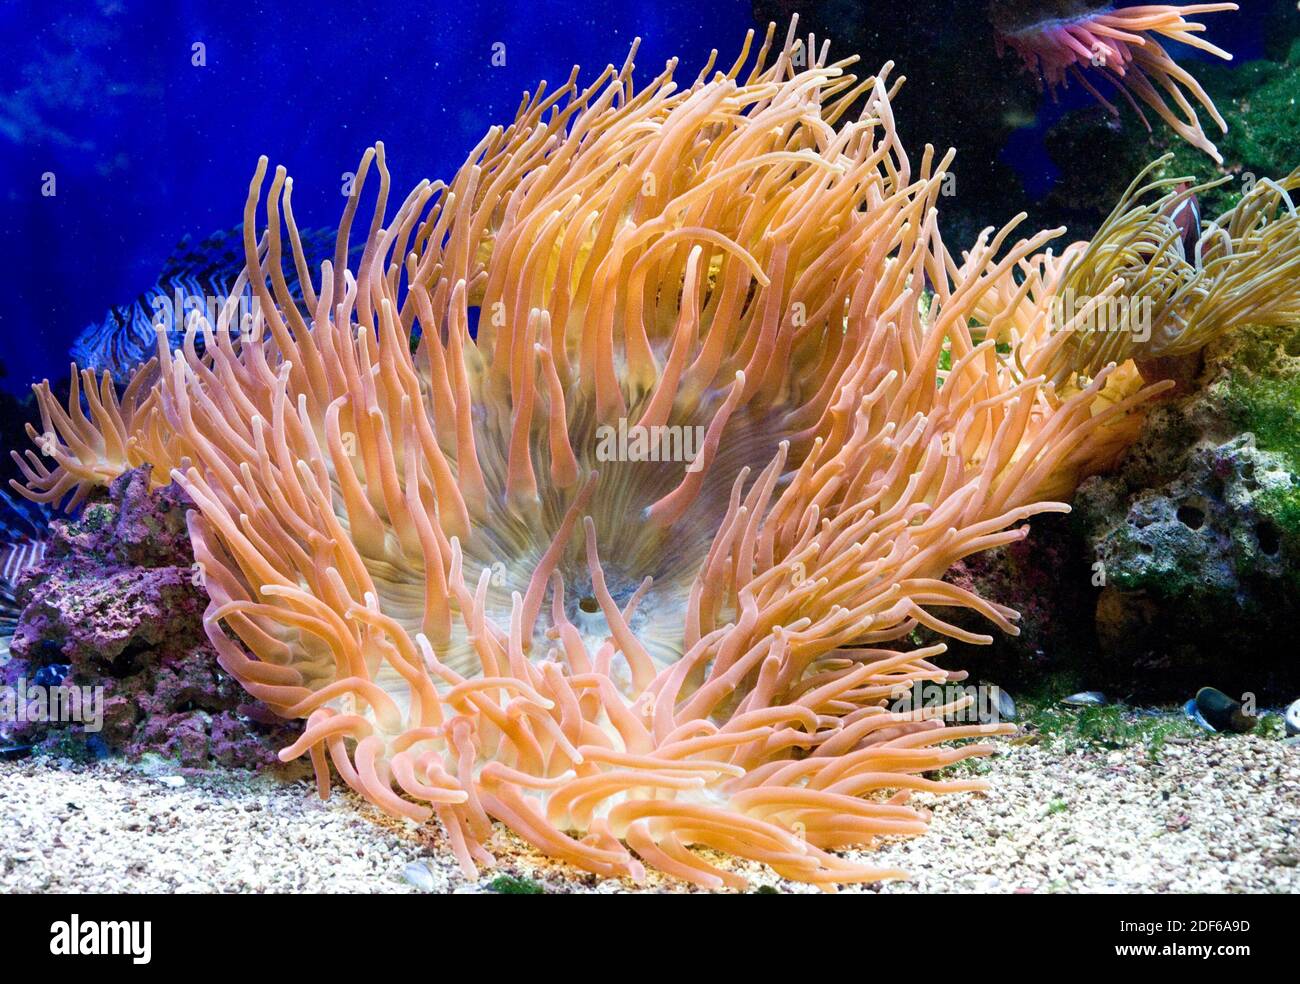 Herrliche Seeanemone (Heteractis magnifica) lebt in den tropischen Gewässern des Indo-Pazifischen Ozeans. Foto in Gefangenschaft aufgenommen. Stockfoto